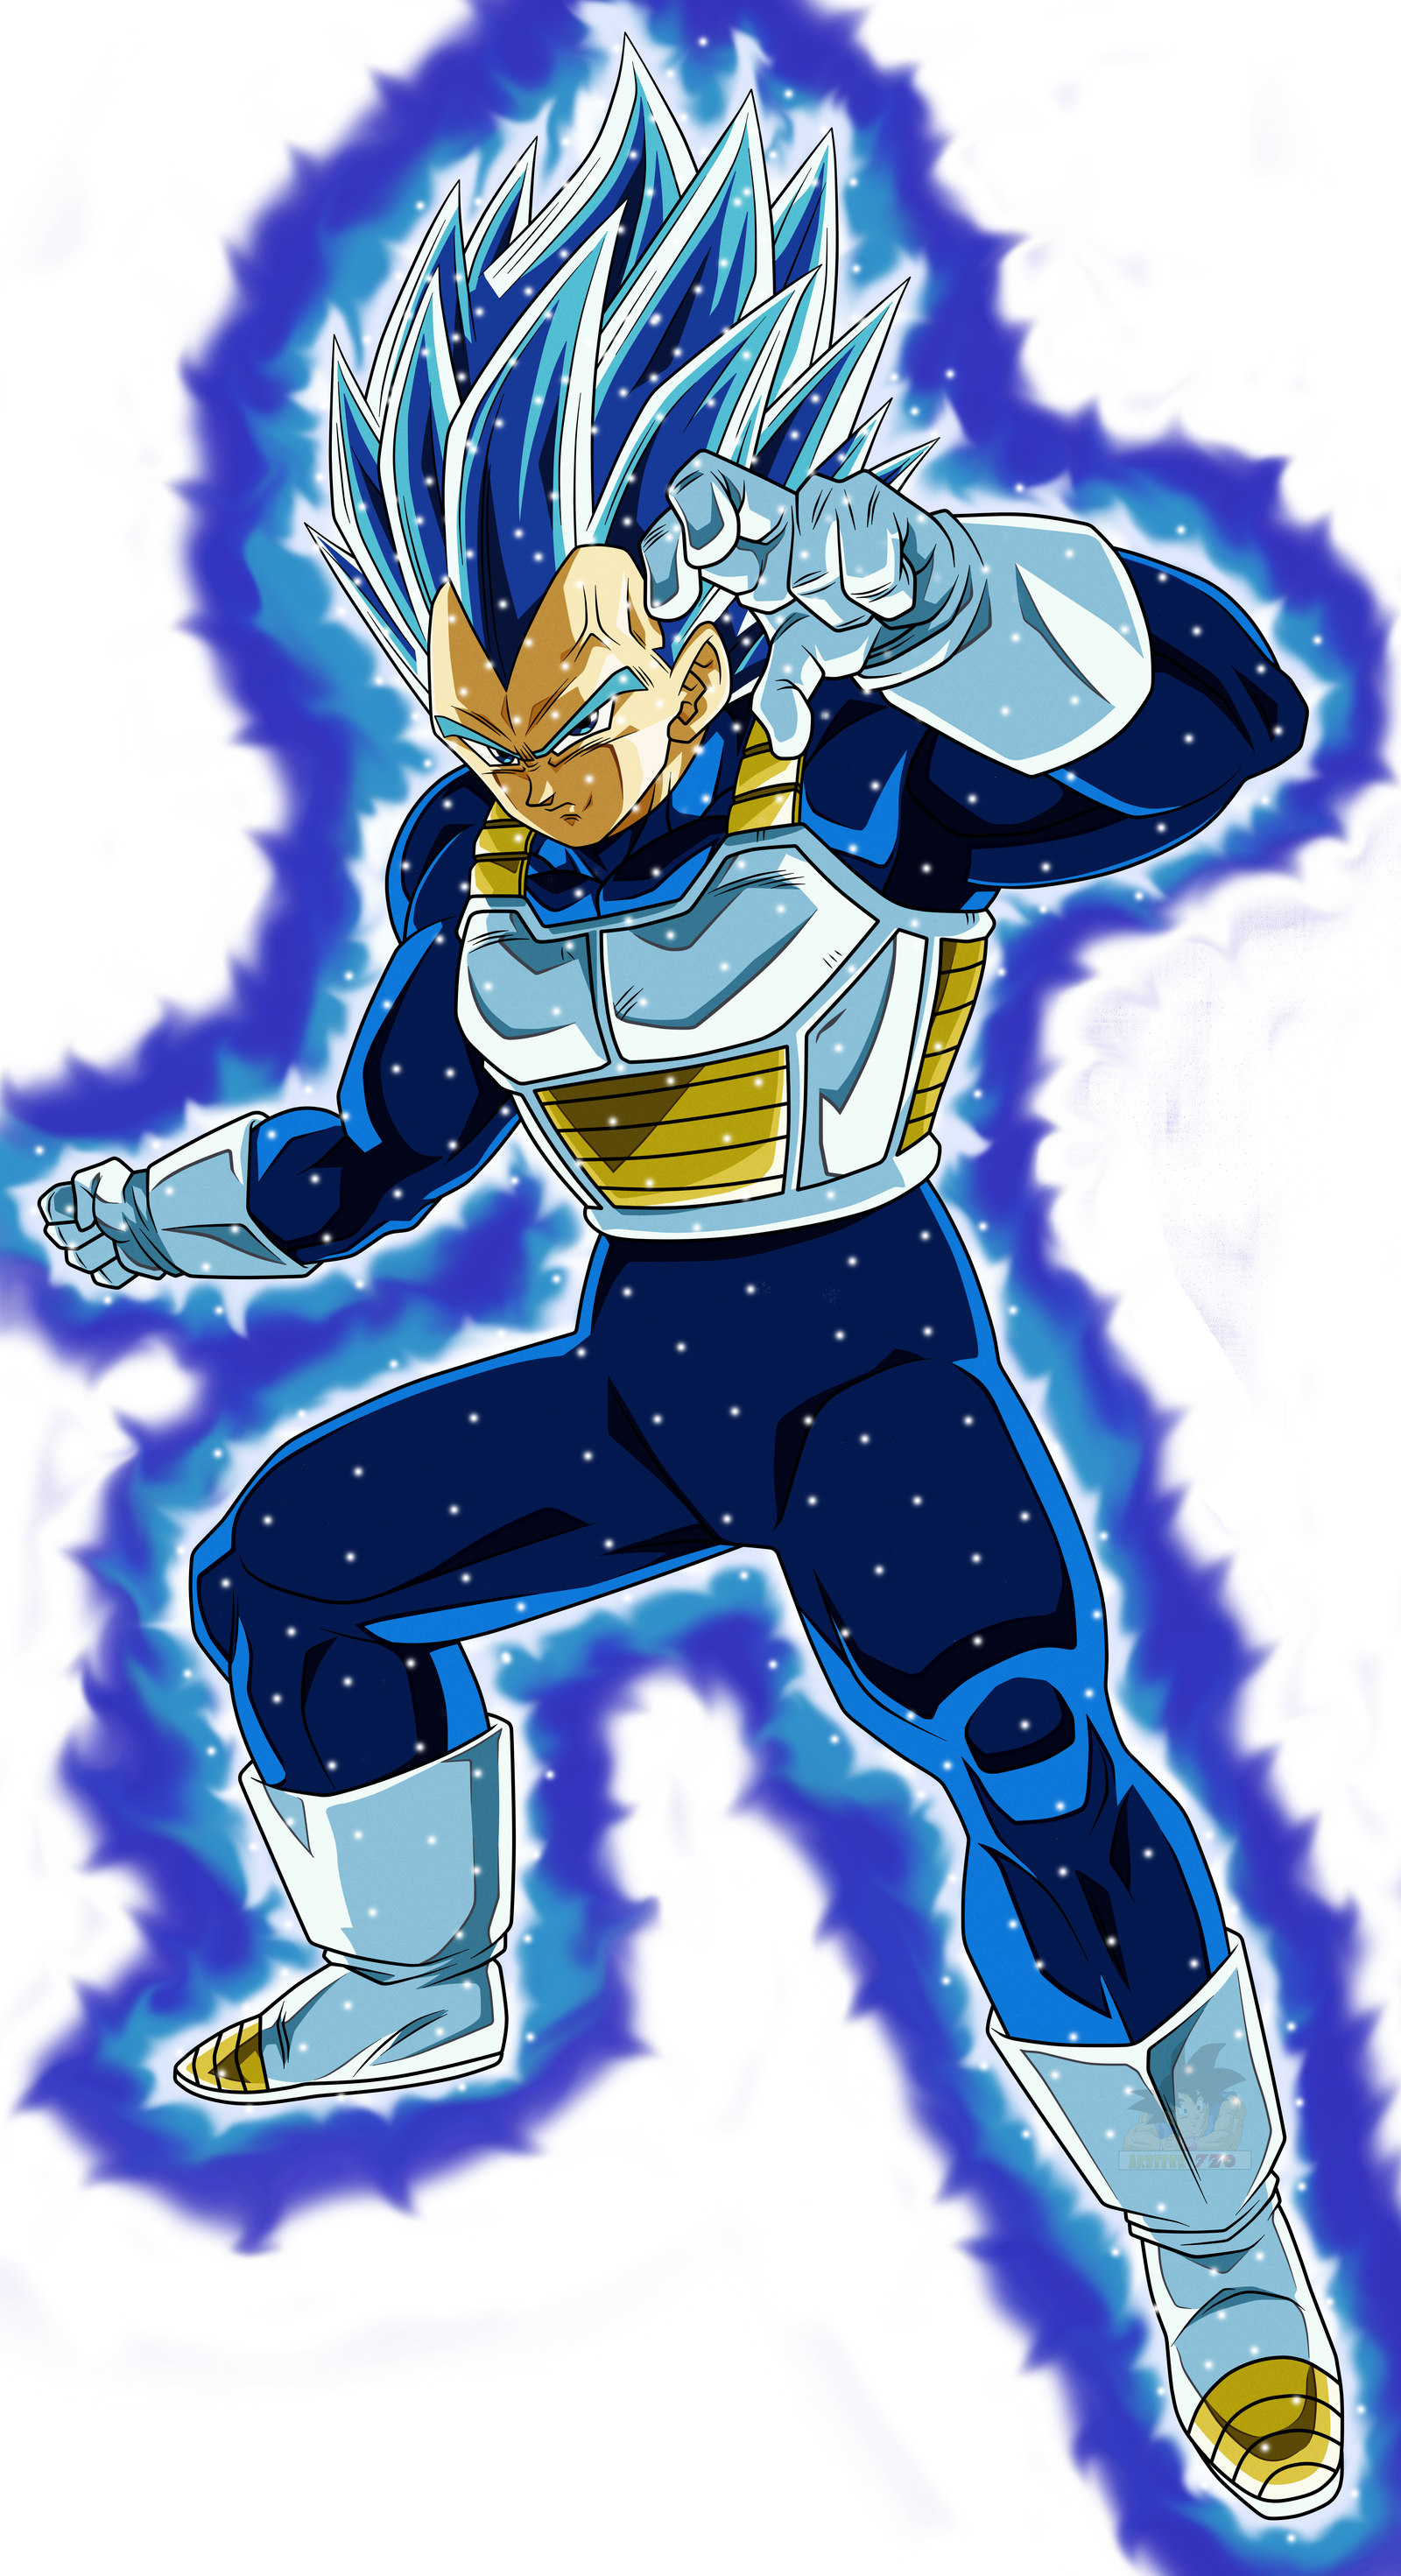 Vegueta y Goku Super Saiyajin Blue Evolution  Personajes de dragon ball,  Super saiyajin, Goku super saiyajin